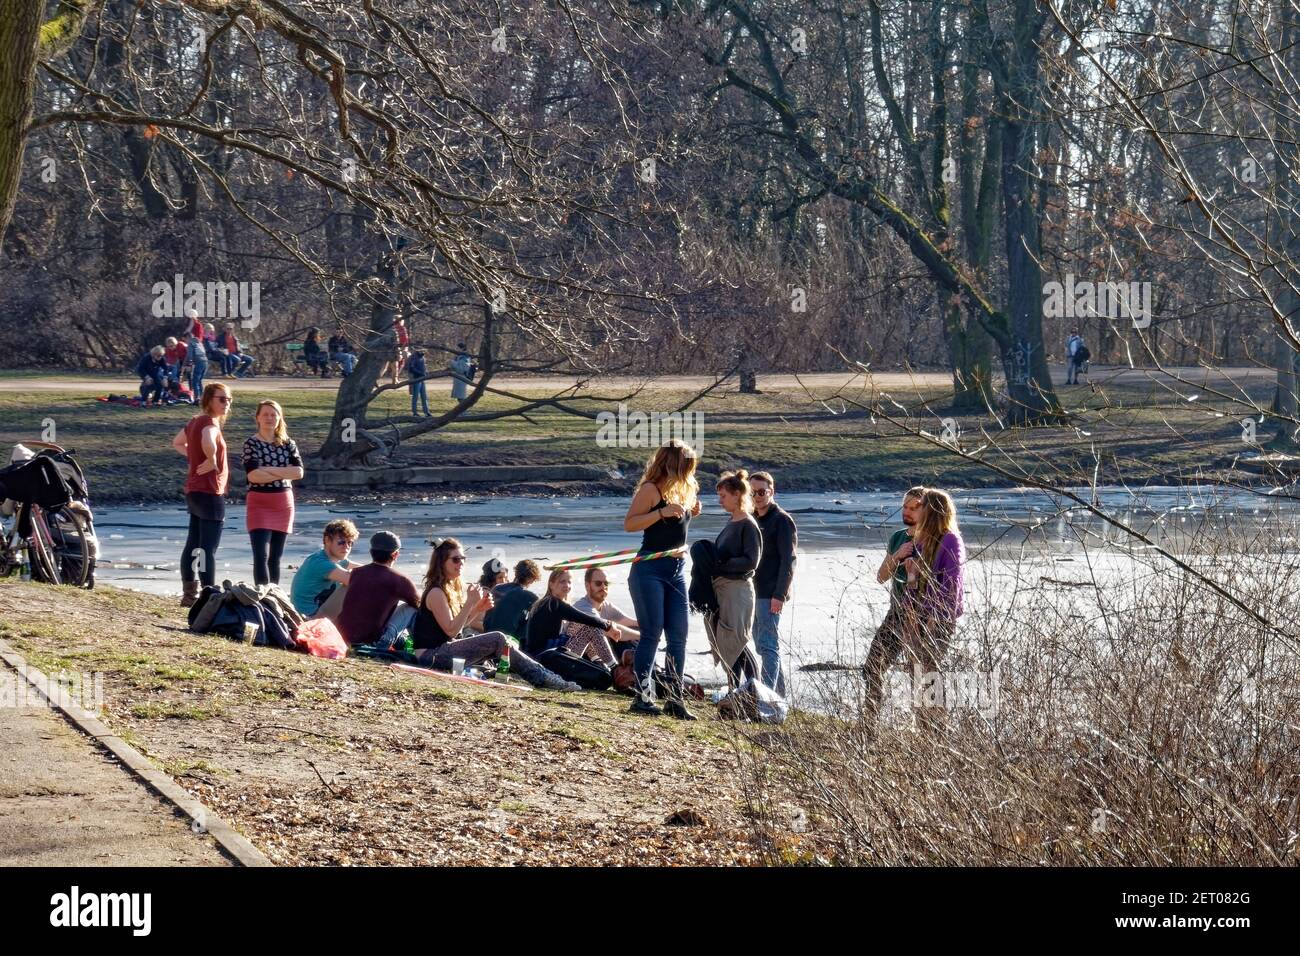 Vorfruehling in Berlin Mitte Februar 2021 , Treptower Park, Karpfenteich,  Junge Leute geniessen das milde Fruehlingswetter .Frau mit Hula-Hoop-Reifen  Stockfotografie - Alamy